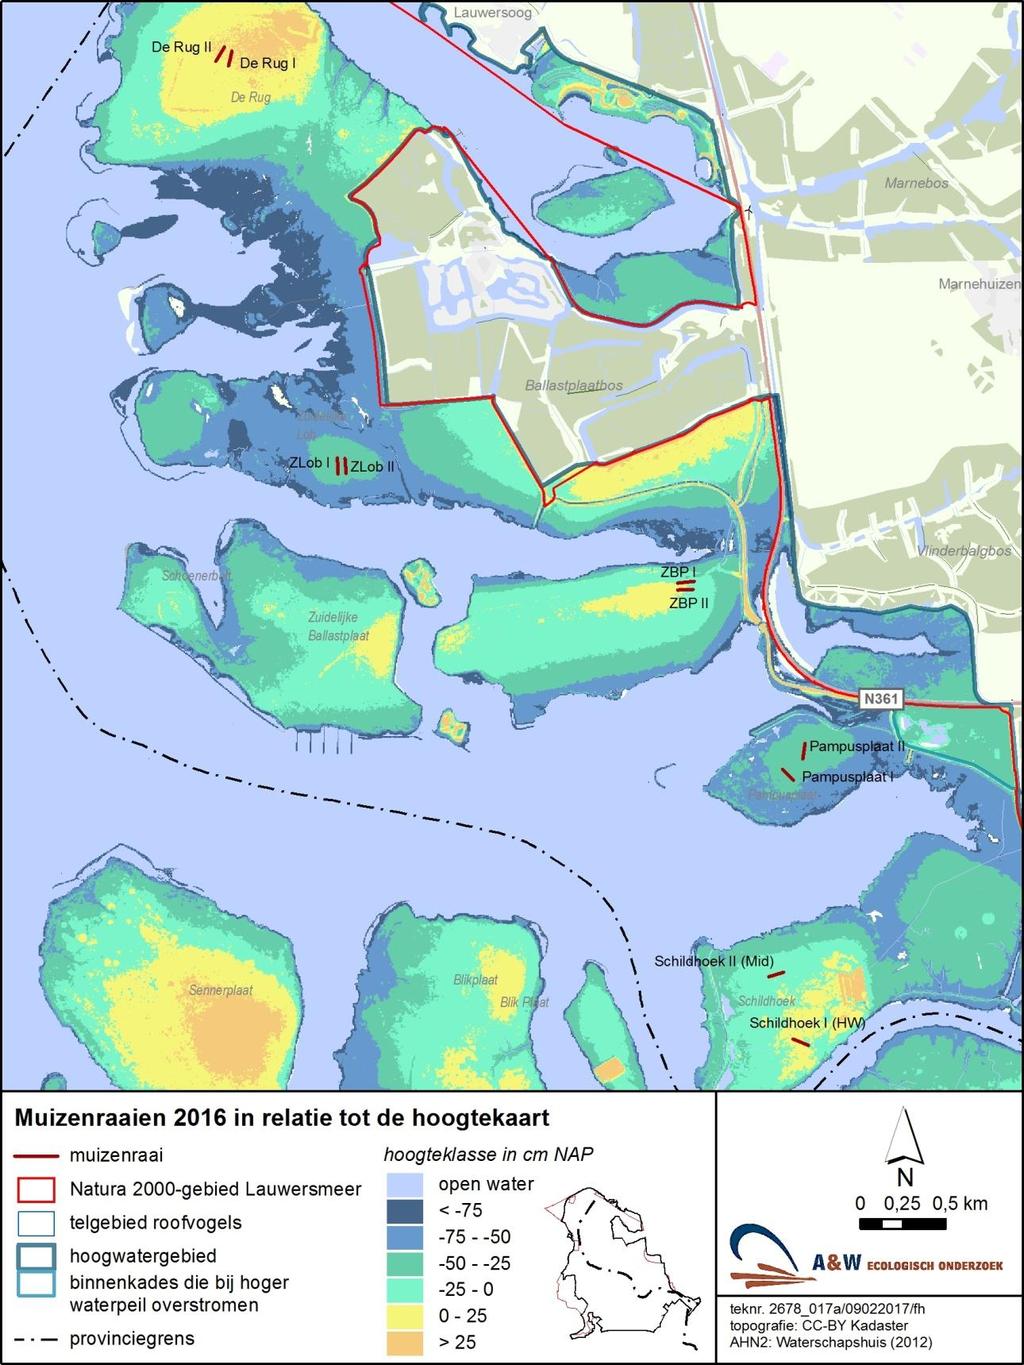 16 A&W-rapport 2288 Monitoring van effecten van bodemdaling op muizen en muizenetende roofvogels in het Lauwersmeer